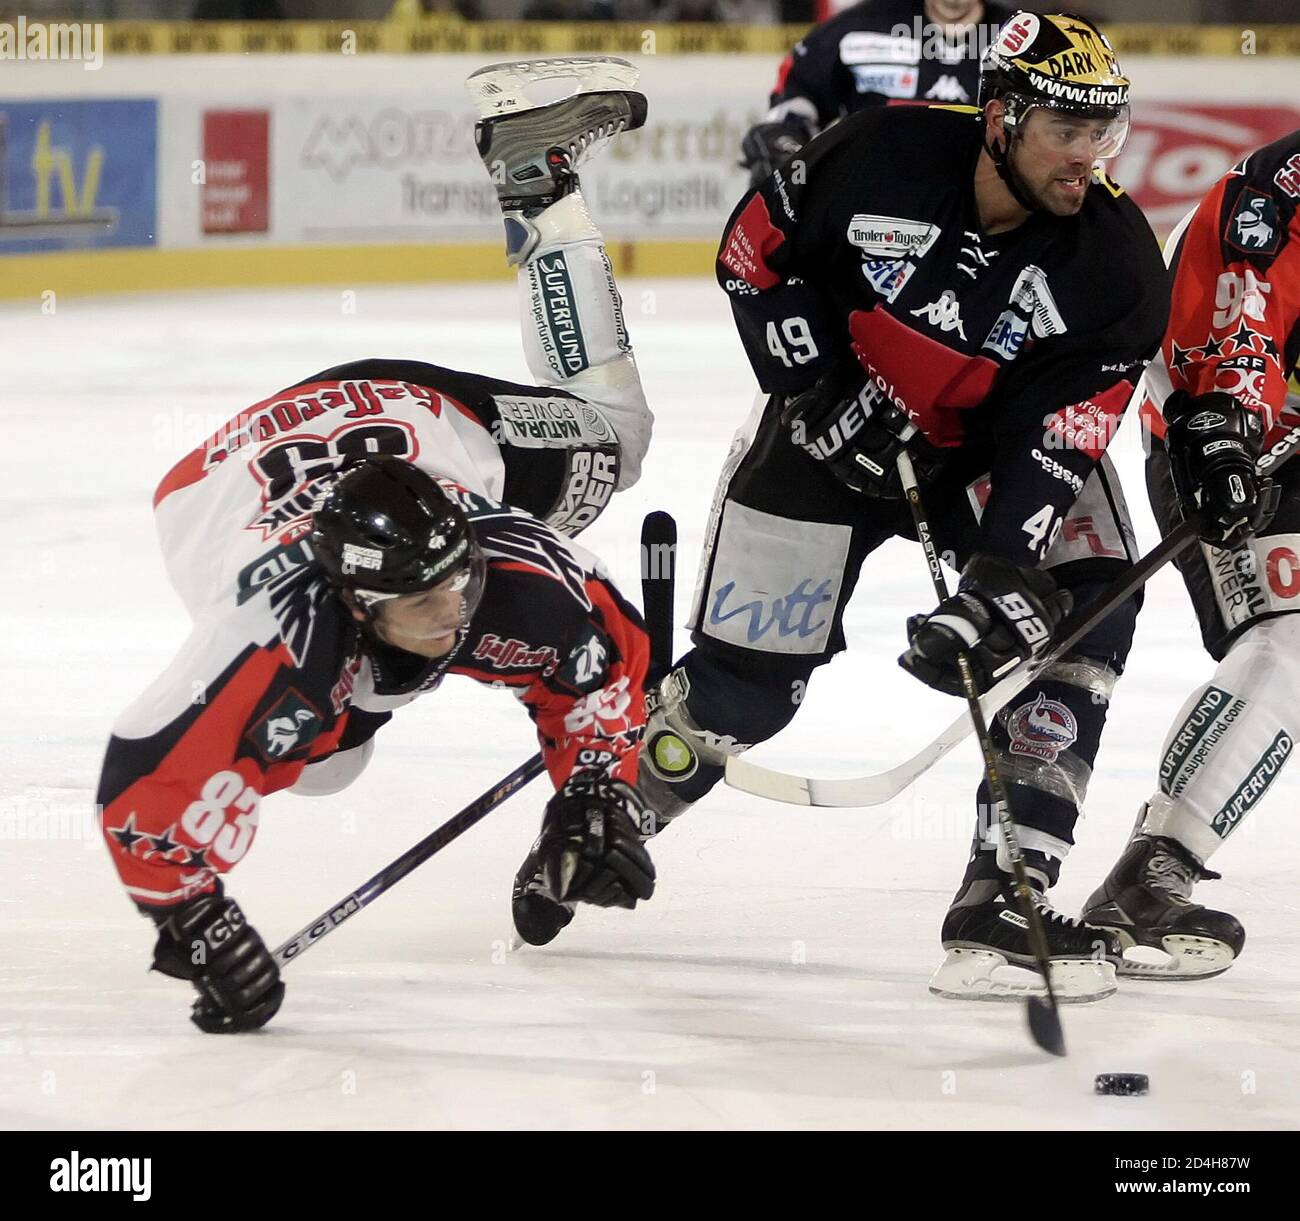 Gestern, am 23 November 2004, fand in Innsbruck das Eishockey-Bundesligaspiel zwischen dem HC Innsbruck und den Black Wings Linz statt. Im Bild kampfen Georg Privoznik (Linz, L) und Martin Hohenberger (HCI) um den Puck. REUTERS/Dominic Ebenbichler REUTERS  HPB/ Stock Photo